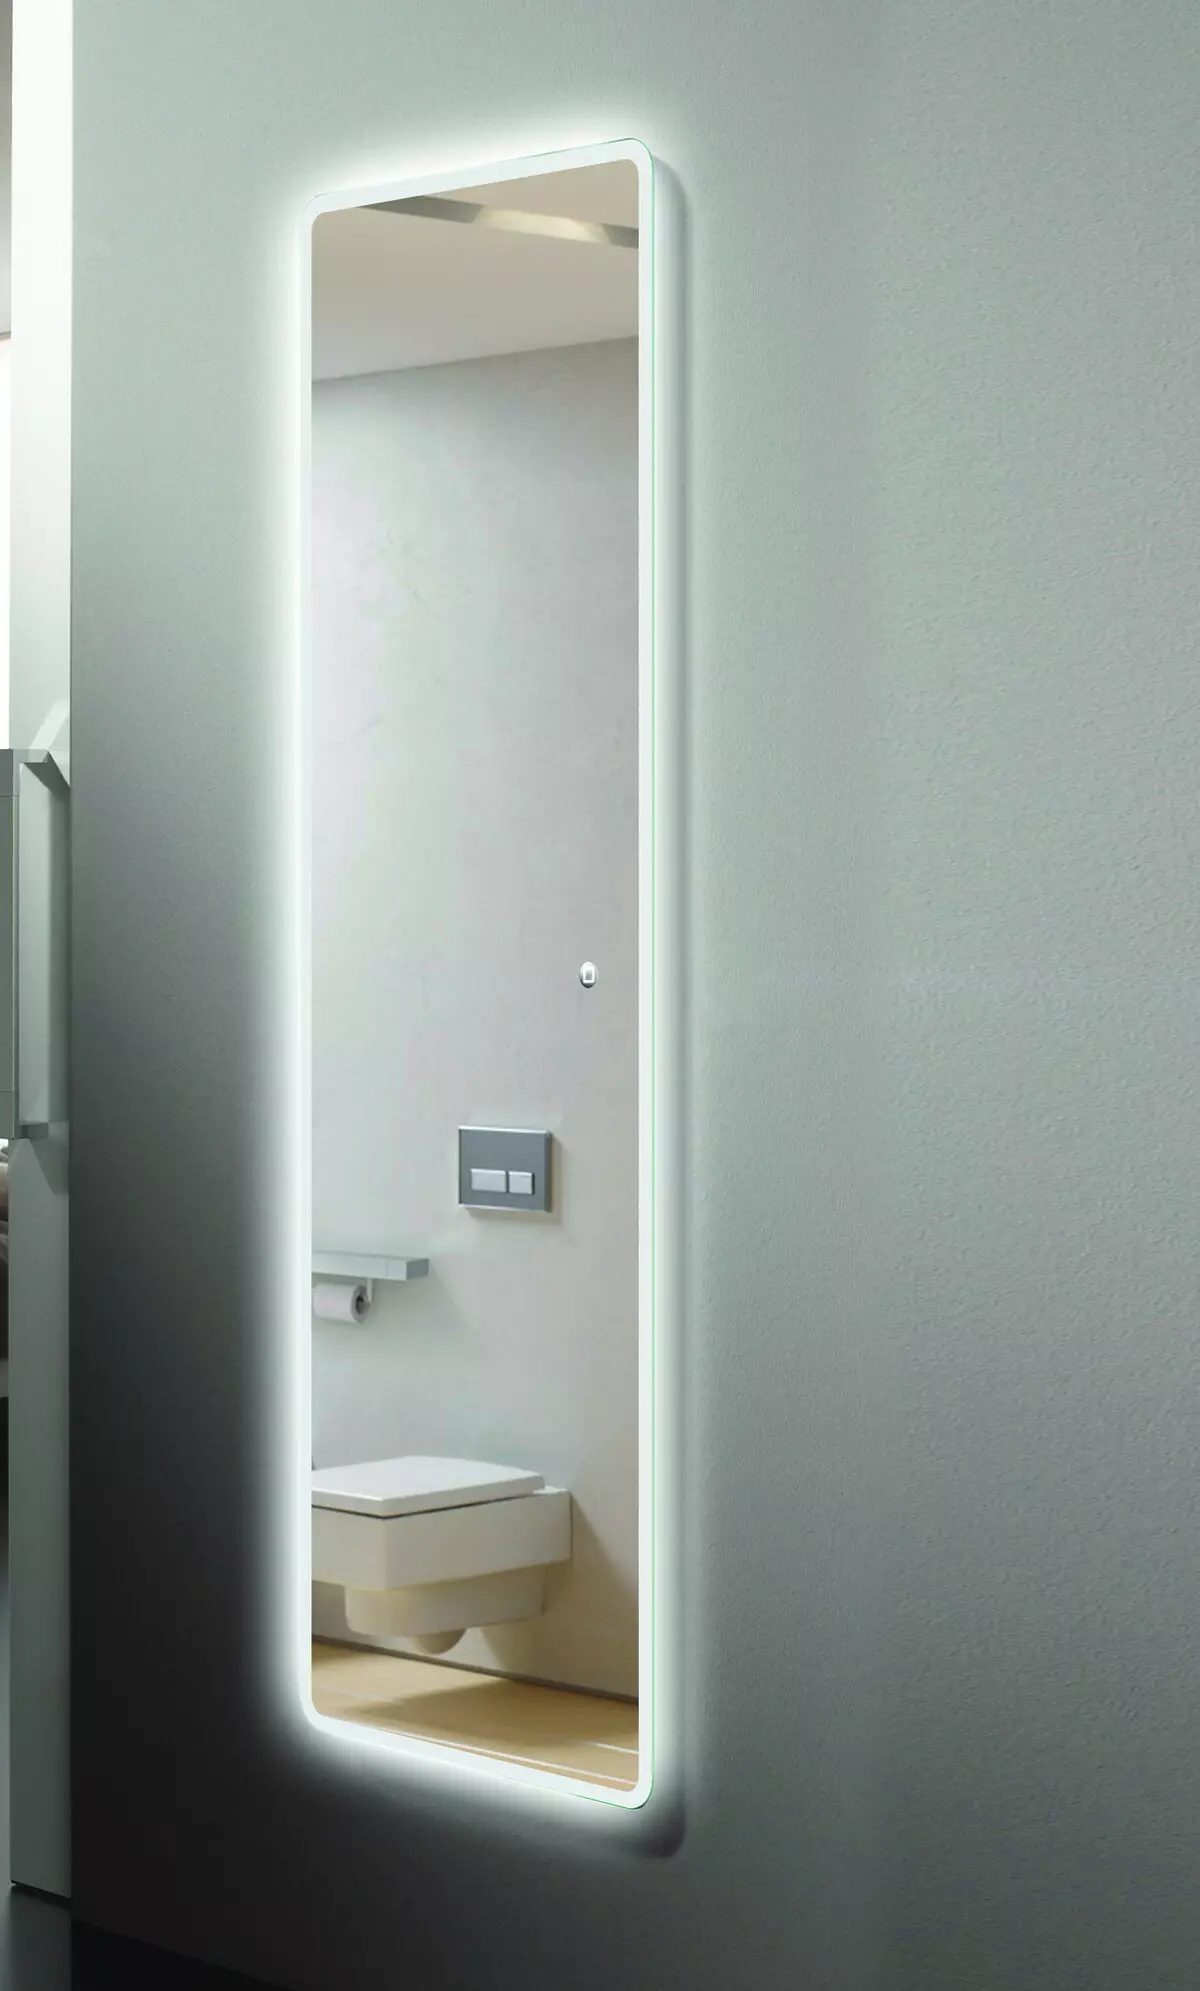 Гријано огледало у купатилу: Како одабрати огледало са осветљењем, сатном и анти-равницом у купатилу? Карактеристике грејне огледала 10072_6